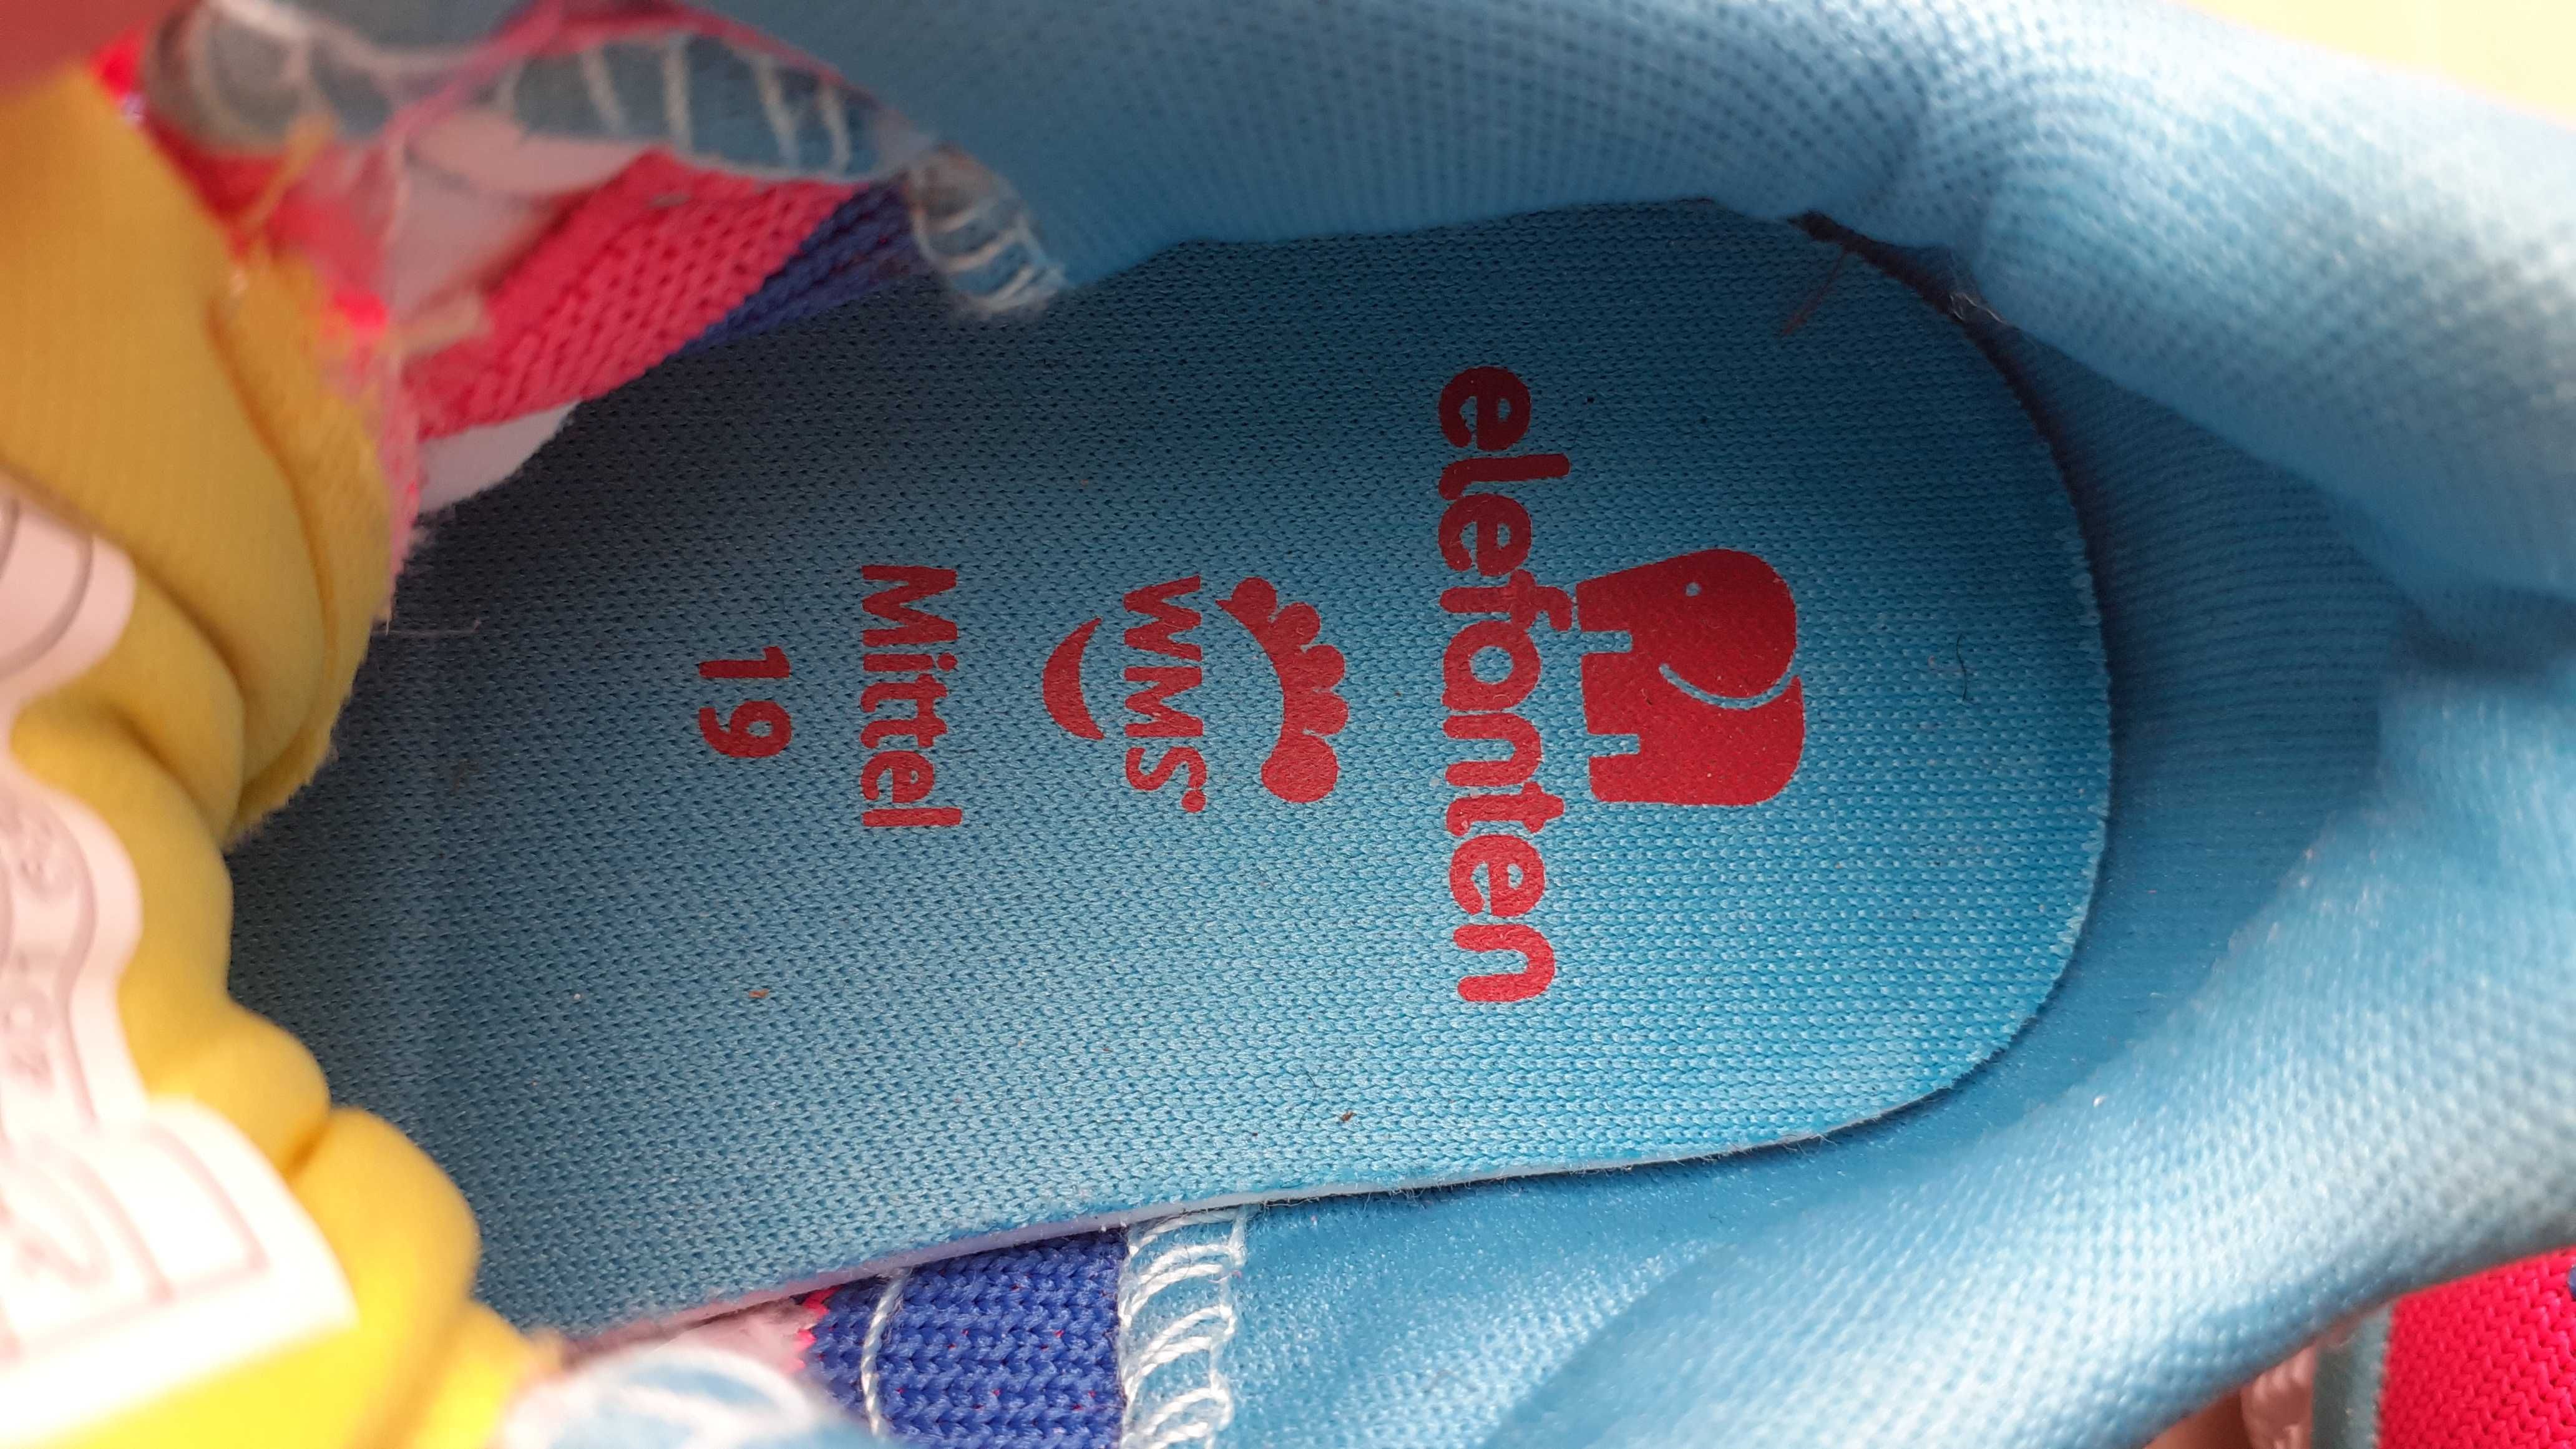 Кроссовки для девочки, размер 19, фирмы Elefanten